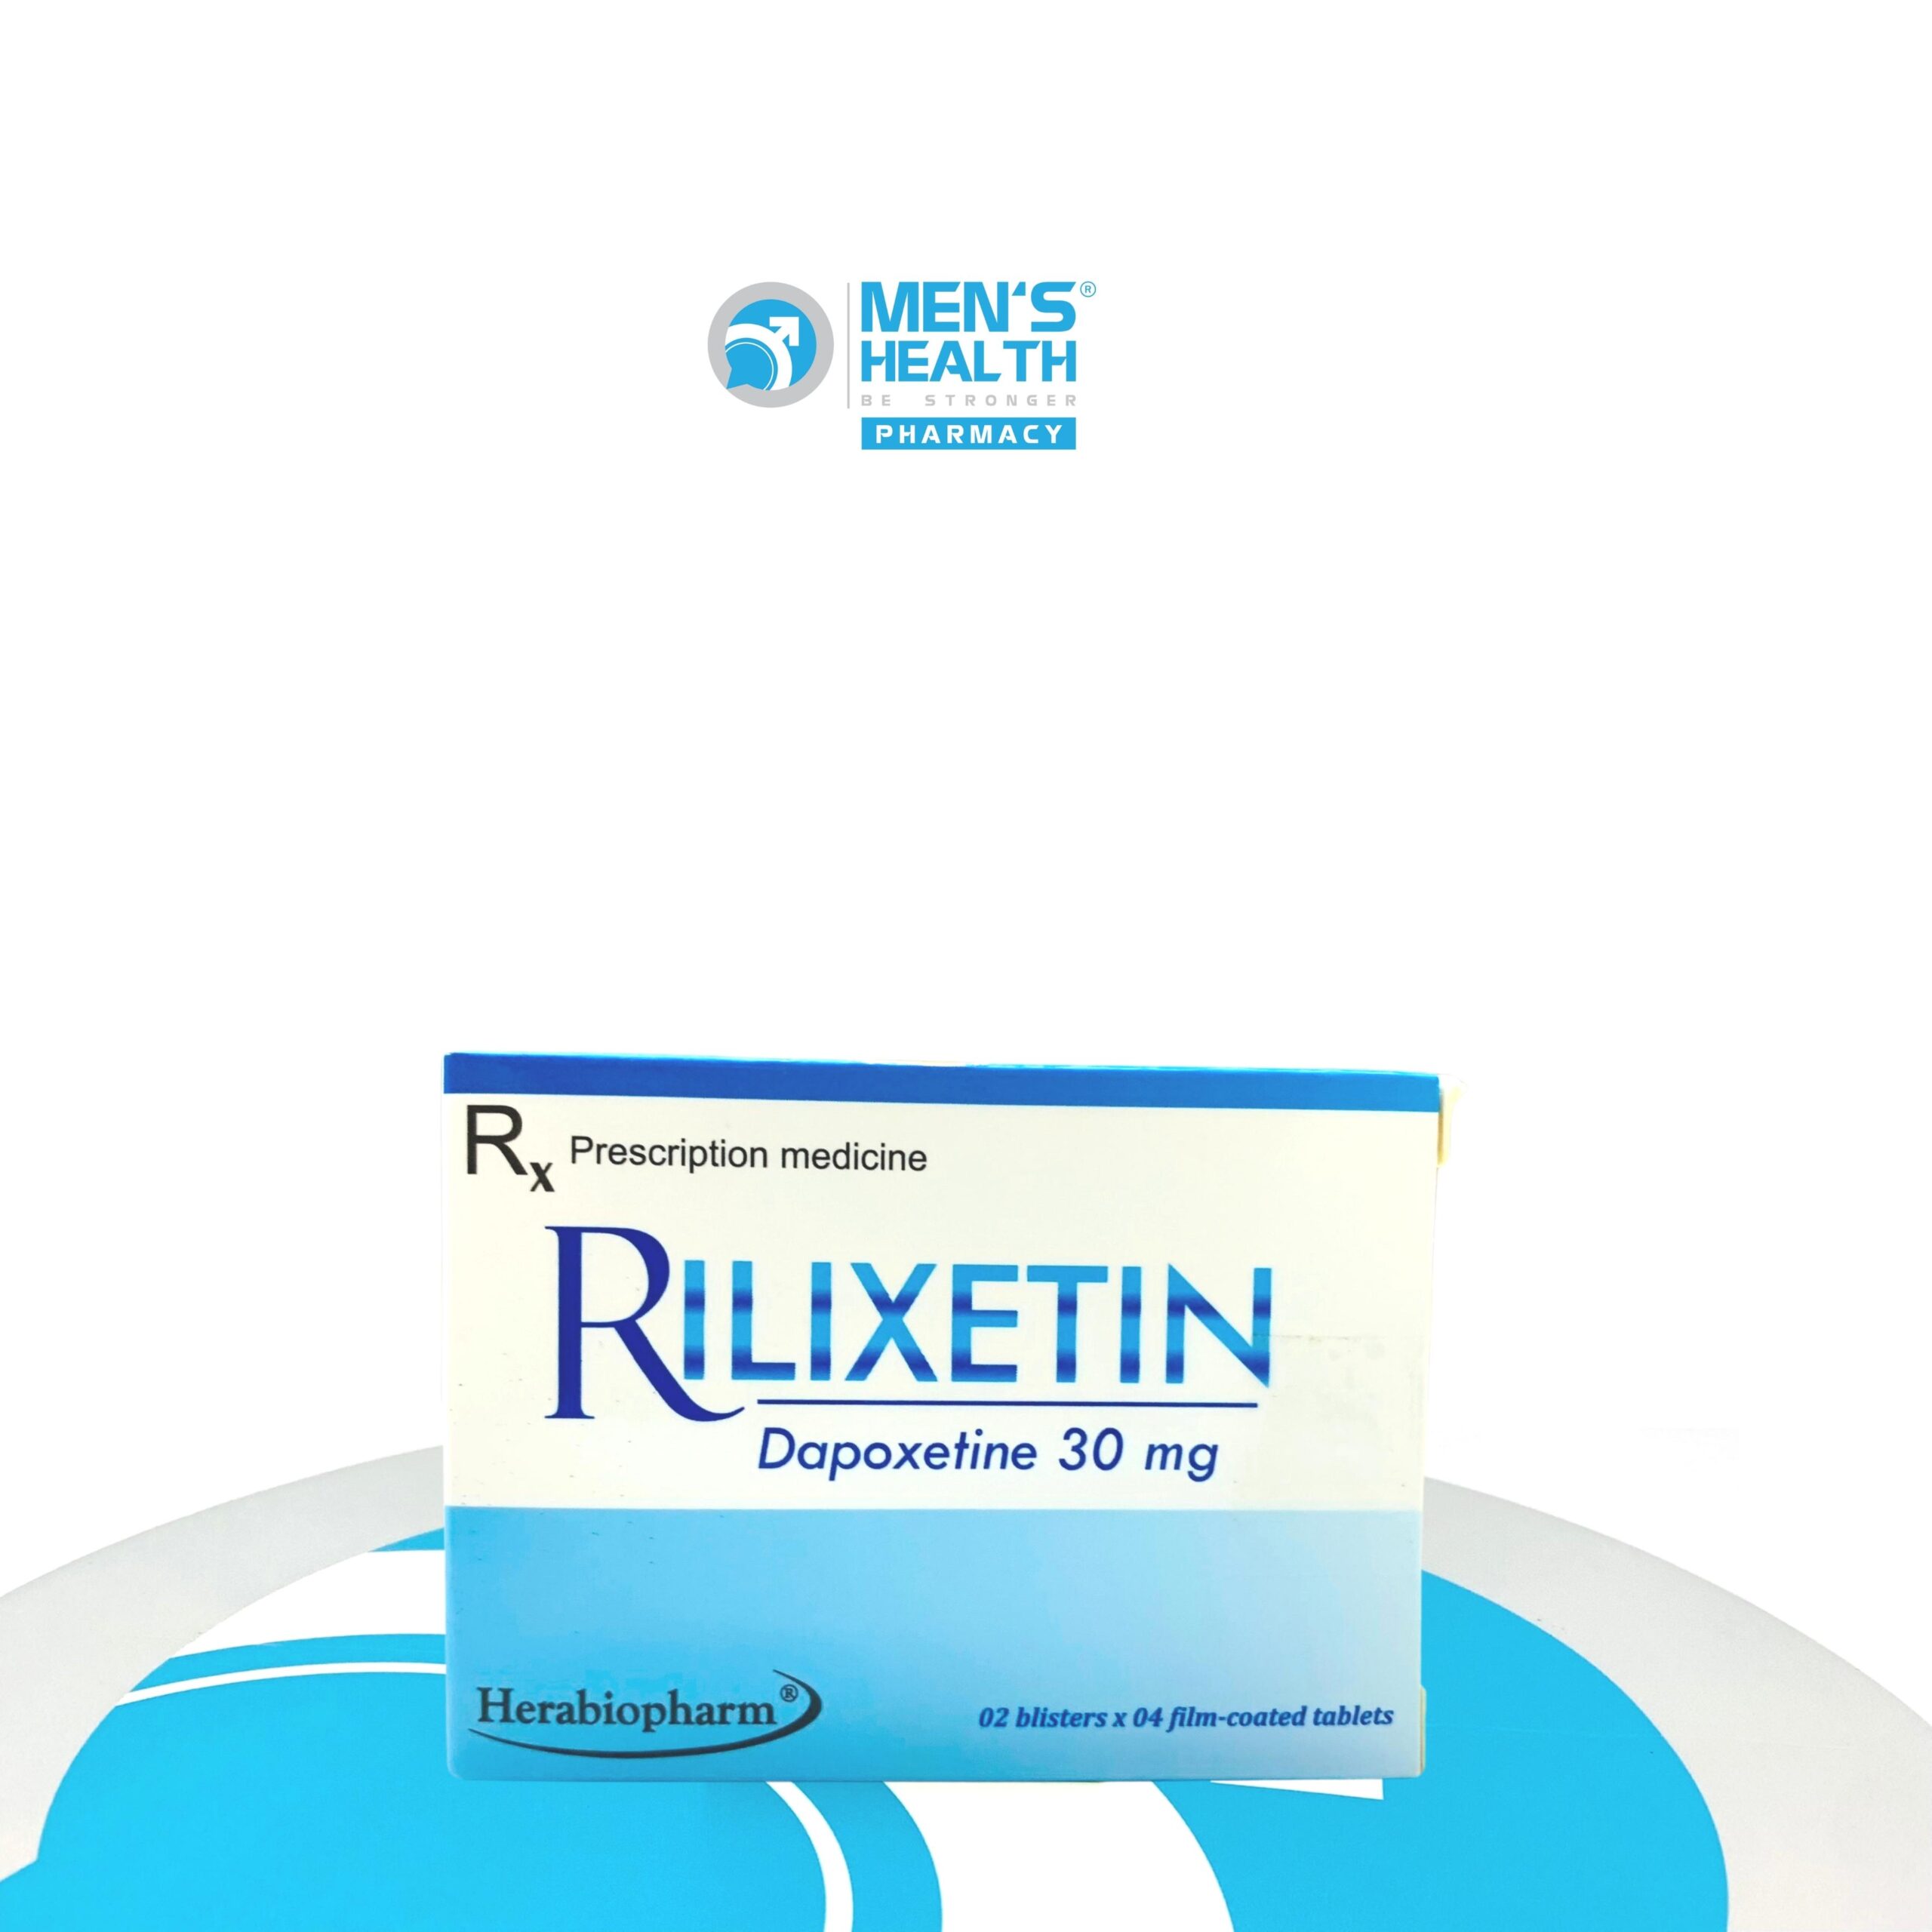 RILIXETIN 30mg – Thuốc điều trị xuất tinh sớm